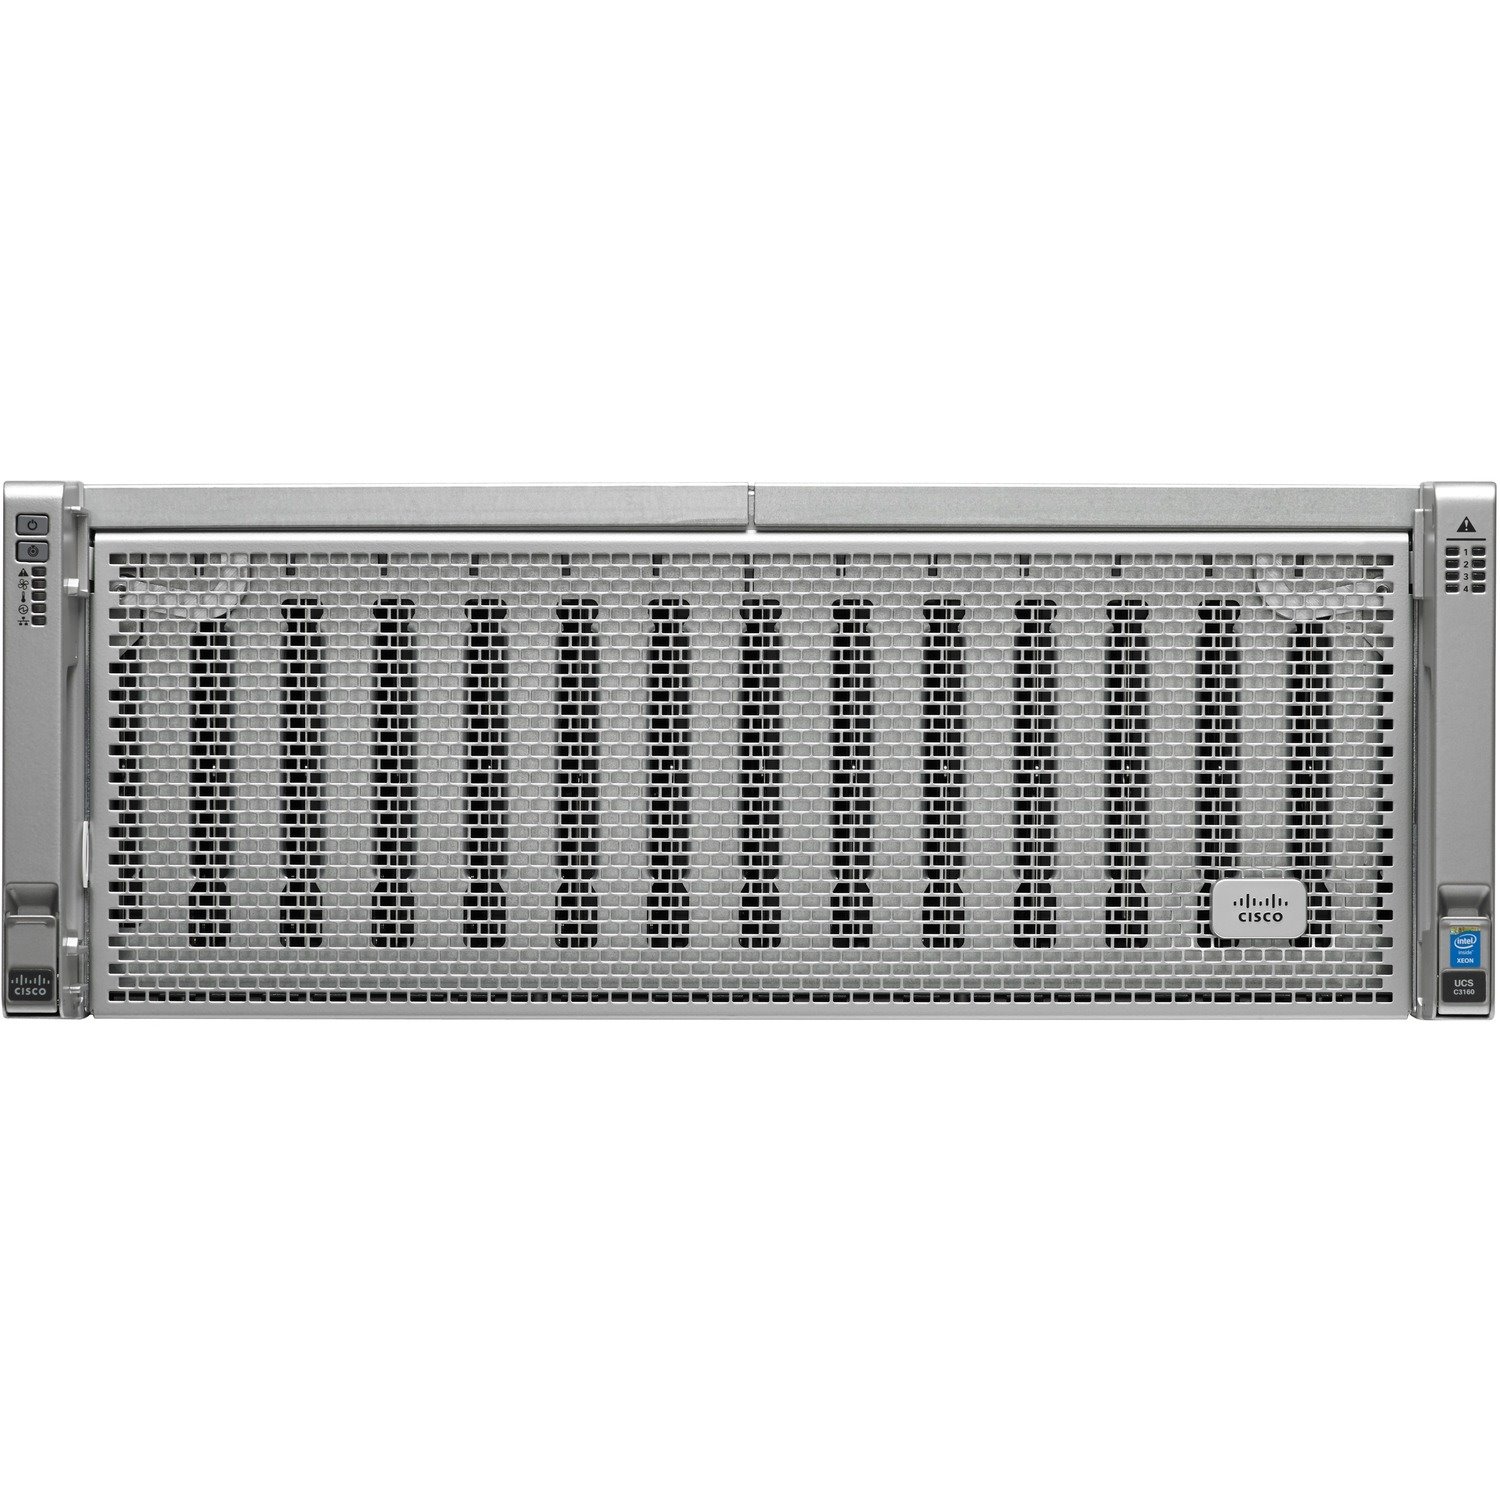 Cisco 4U Rack Server - 2 x Intel Xeon E5-2695 v2 2.40 GHz - 256 GB RAM - 12Gb/s SAS Controller